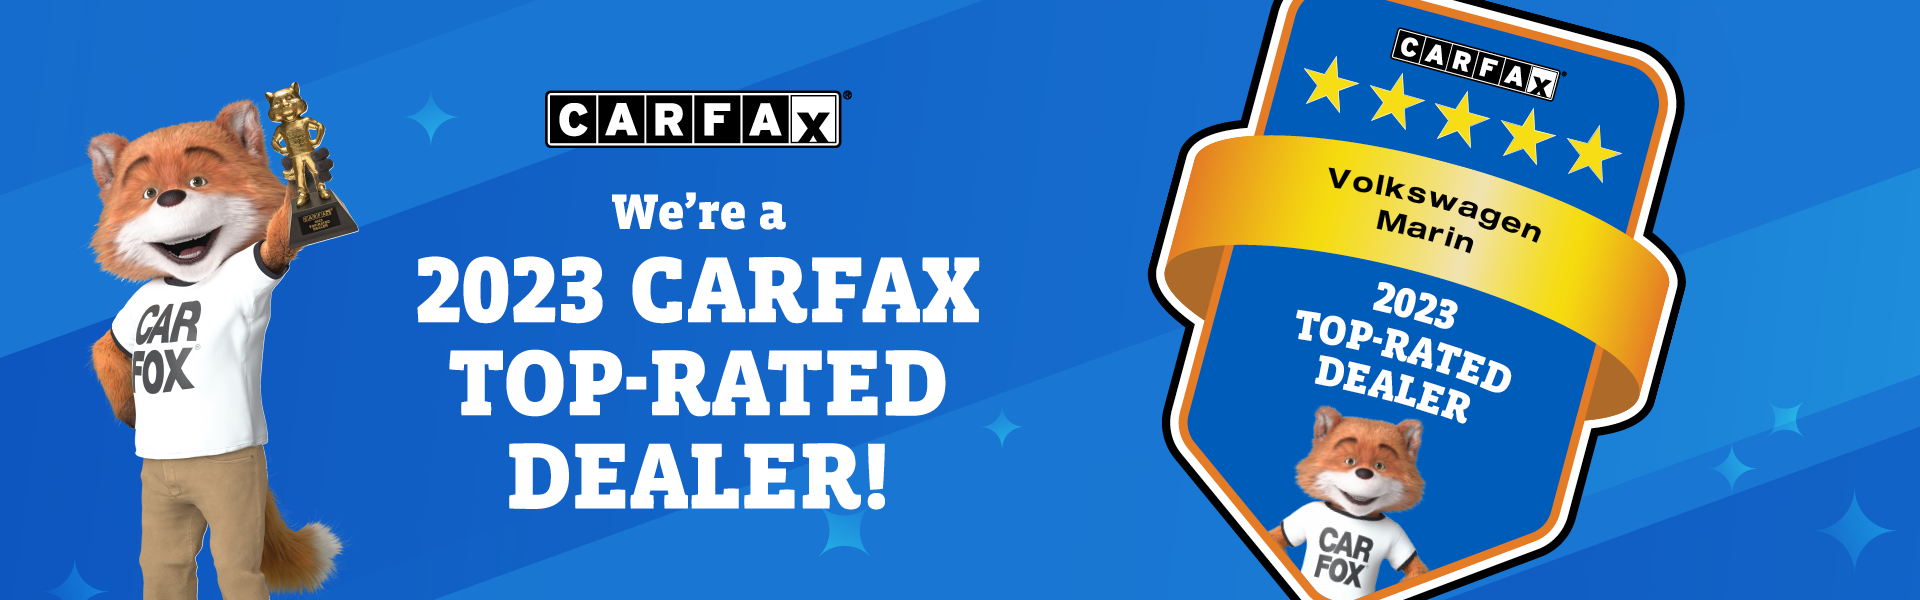 Carfax 2023 Award 